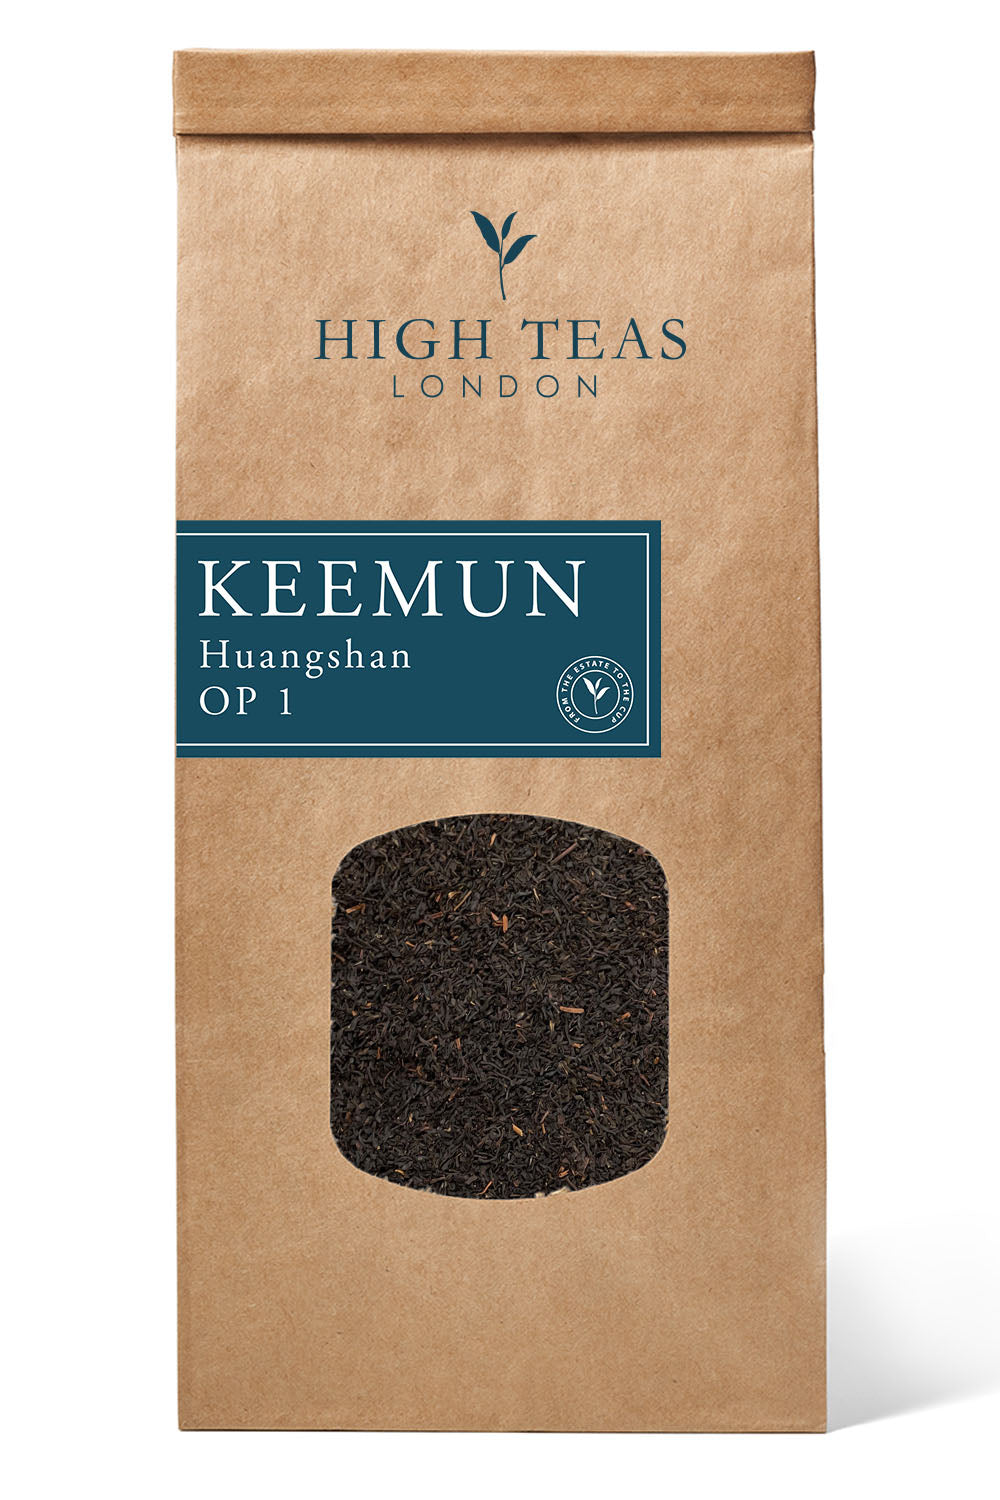 Keemun Huangshan Orange Pekoe 1-250g-Loose Leaf Tea-High Teas